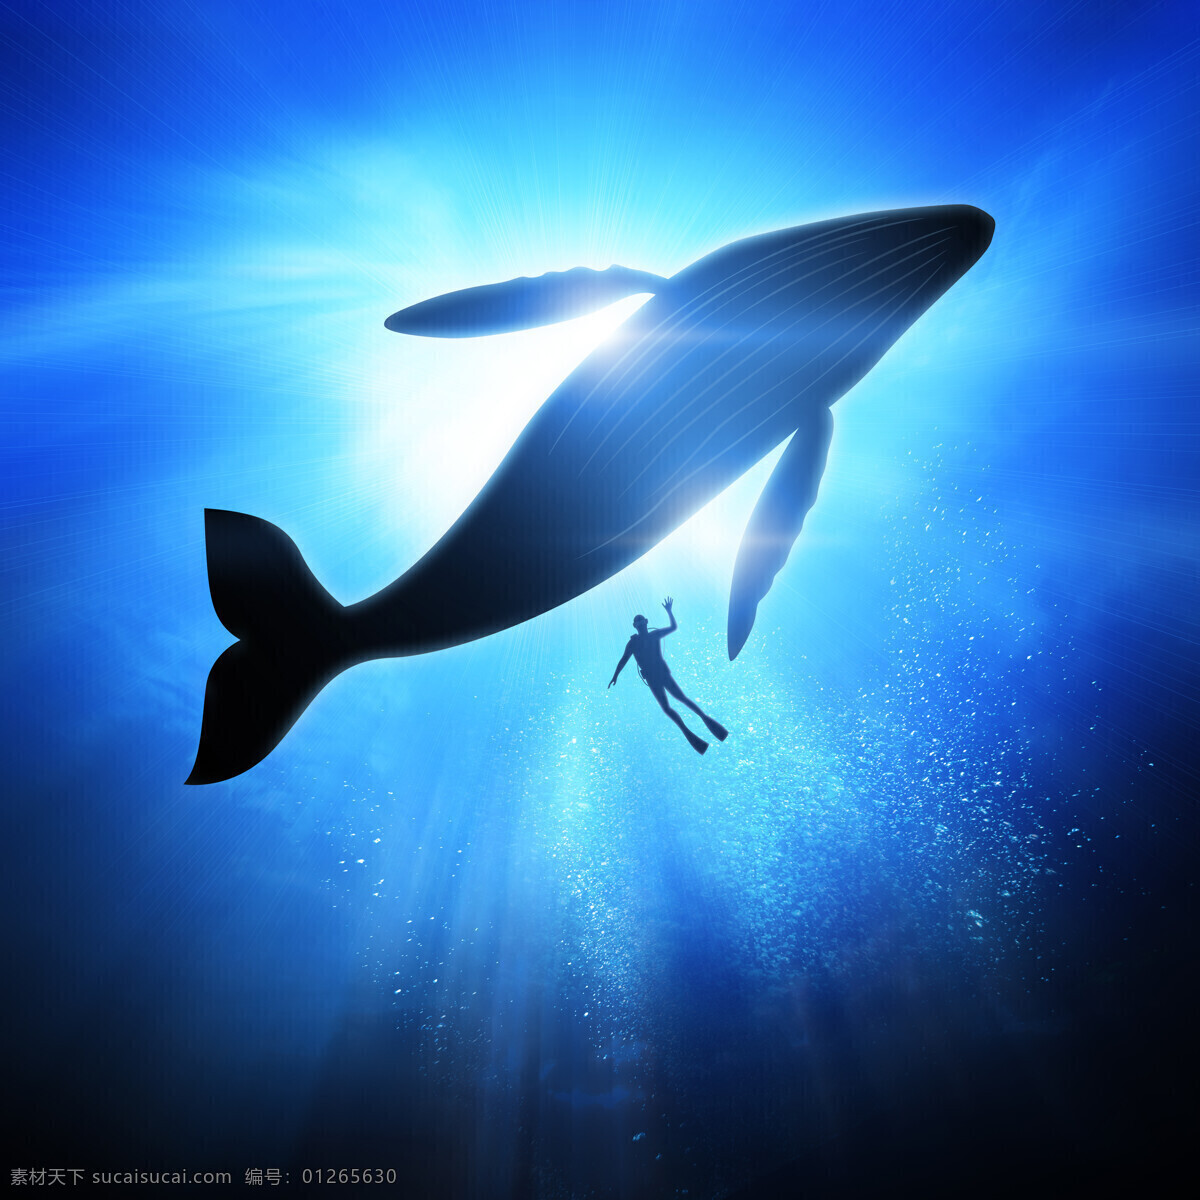 虎鲸 海洋动物 跳跃 海洋 遨游 野生动物 海洋生物 动物表演 大海 动物 动物世界 动物素材 野生动物摄影 海洋鲸鱼 生物世界